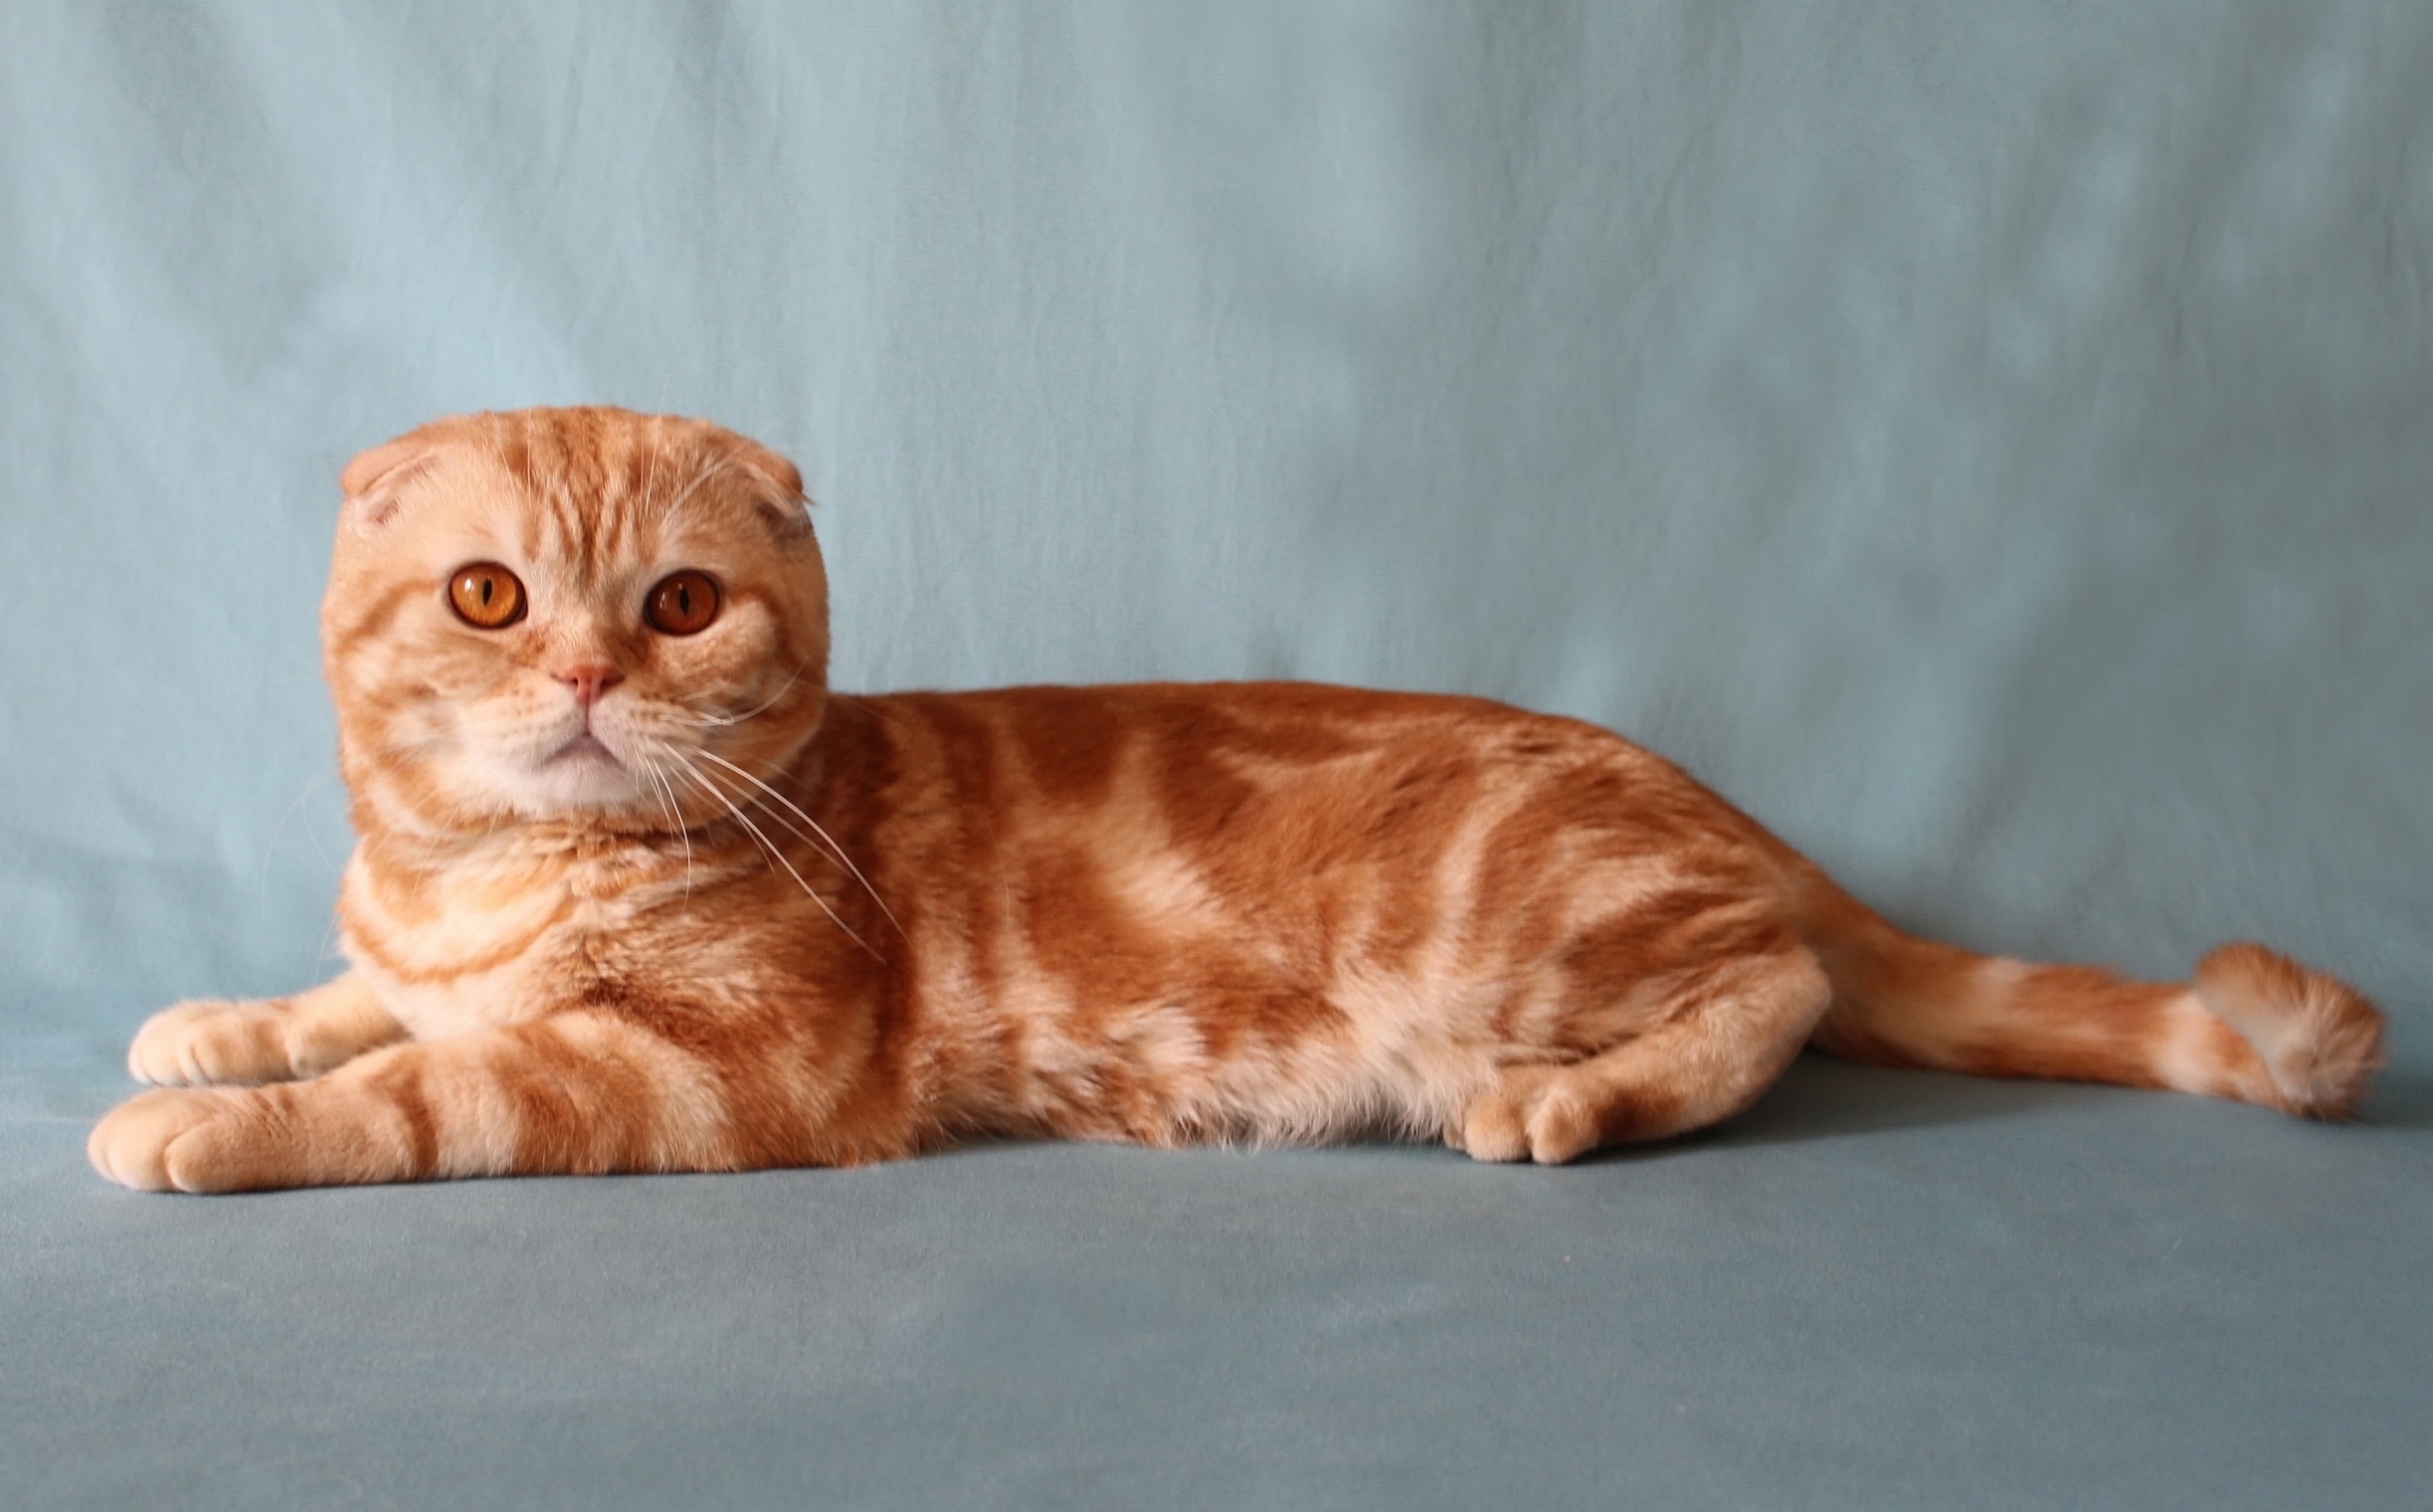 Шотландская вислоухая кошка рыжая мраморная - картинки и фото koshka.top